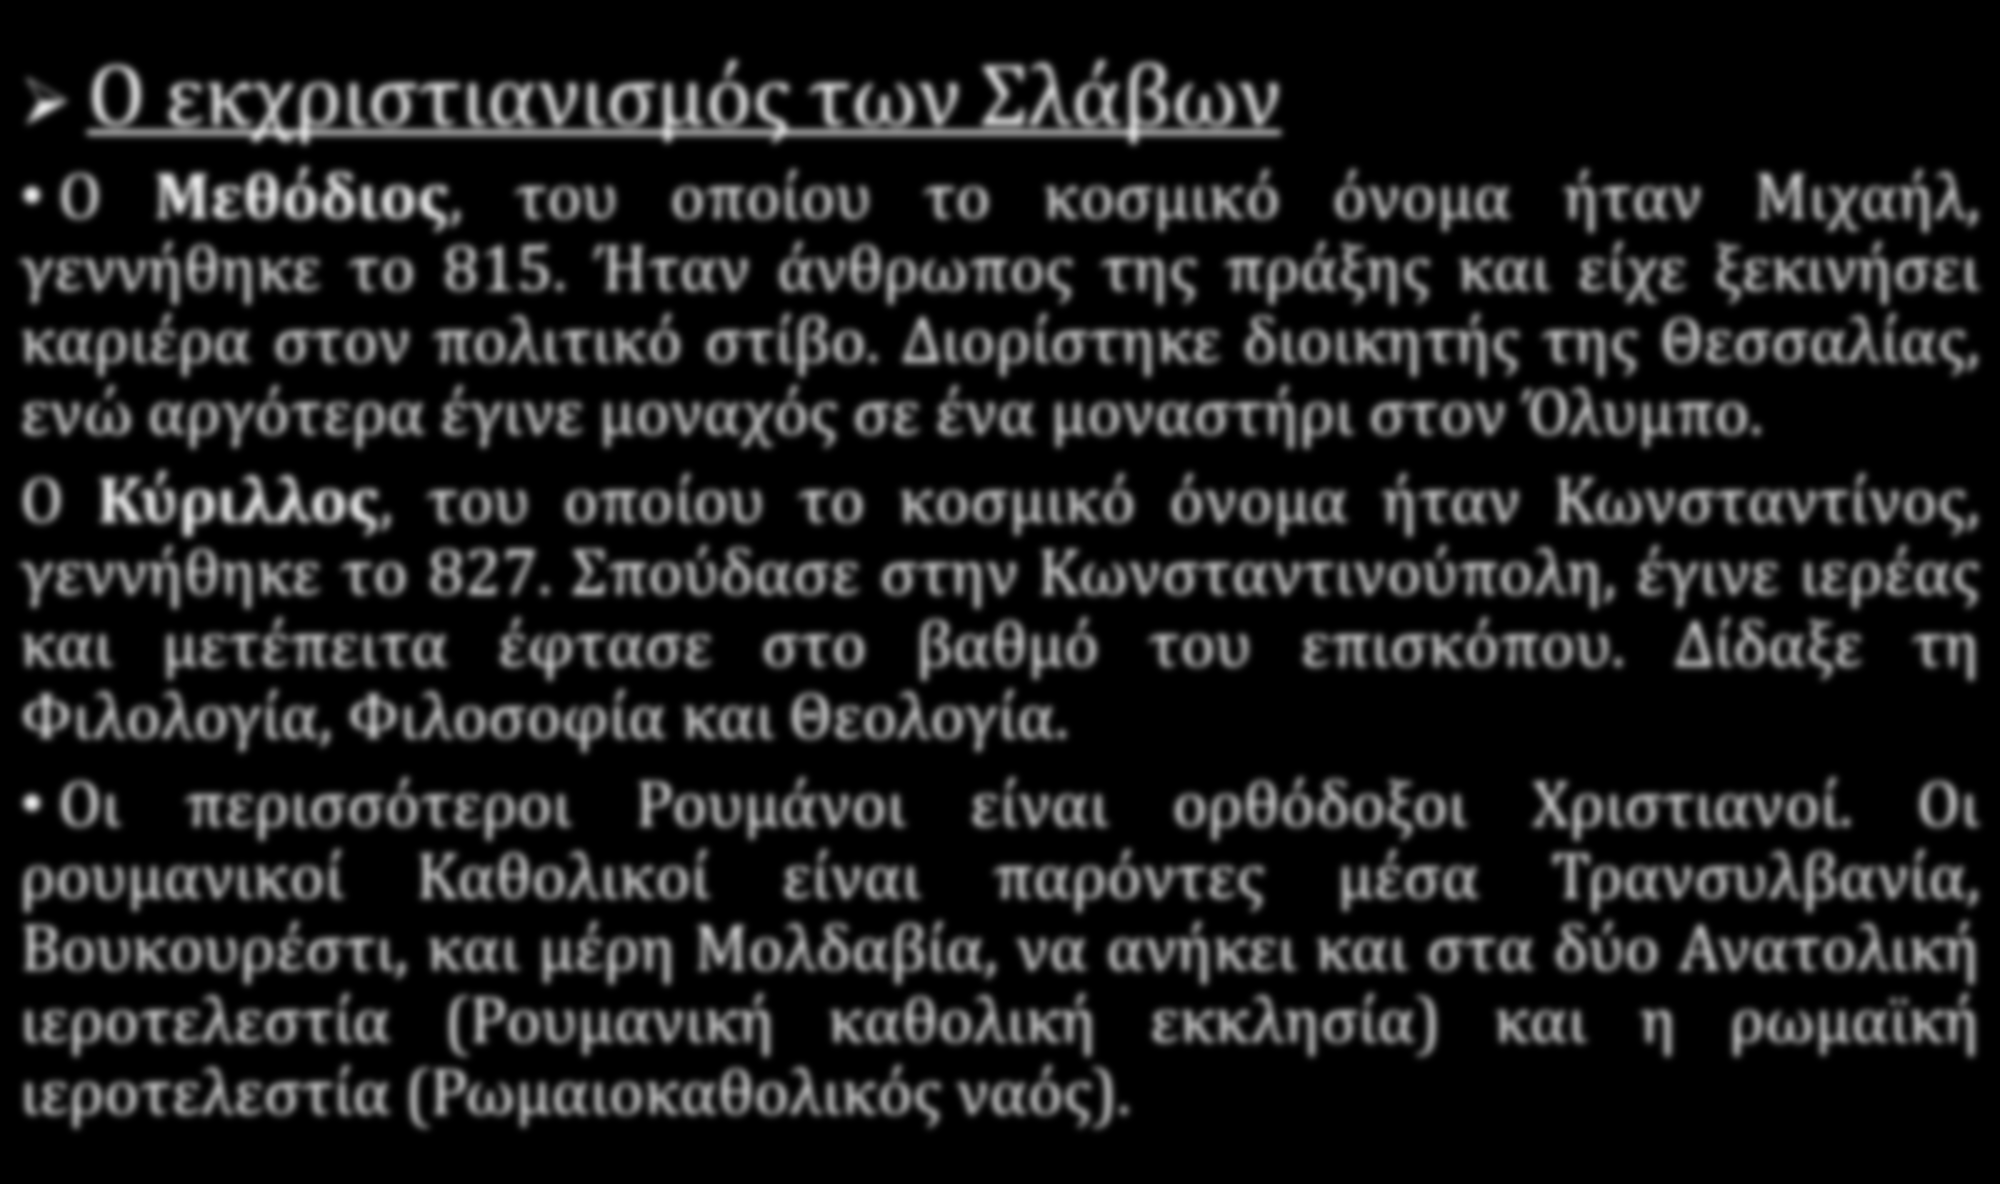 Ο ορθοδοξος χριστιανισμος στον Σλαβικό κόσμο και στα Βαλκάνια ΡΟΥΜΑΝΙΑ Ο εκχριστιανισμός των Σλάβων Ο Μεθόδιος, του οποίου το κοσμικό όνομα ήταν Μιχαήλ, γεννήθηκε το 815.